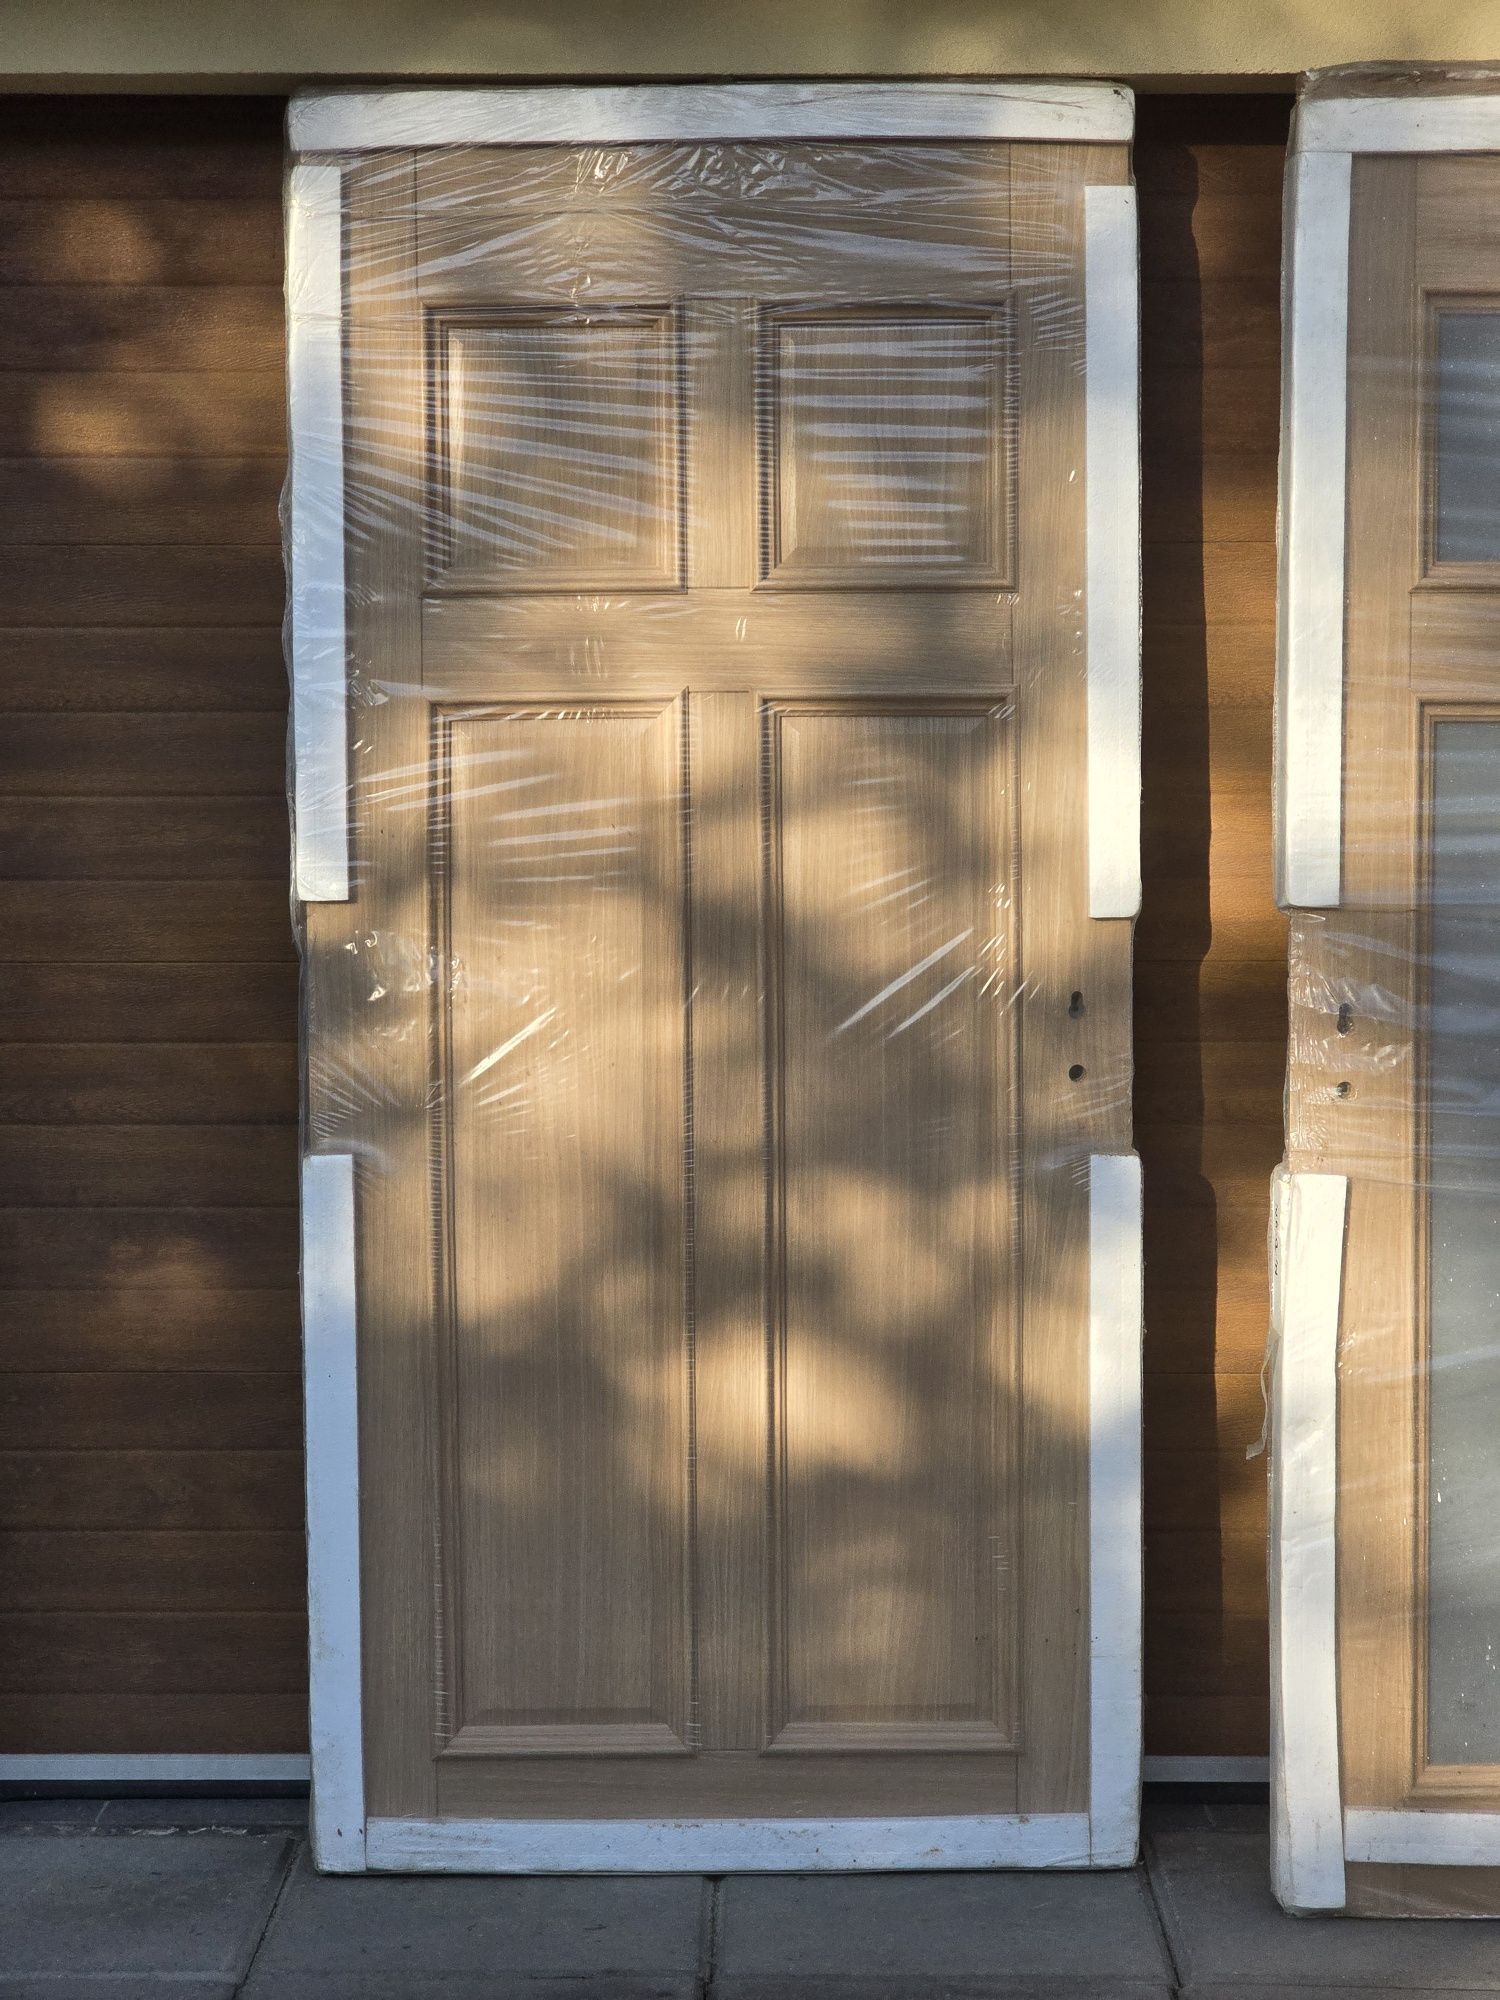 Drzwi drewniane 90cm 5sztuk